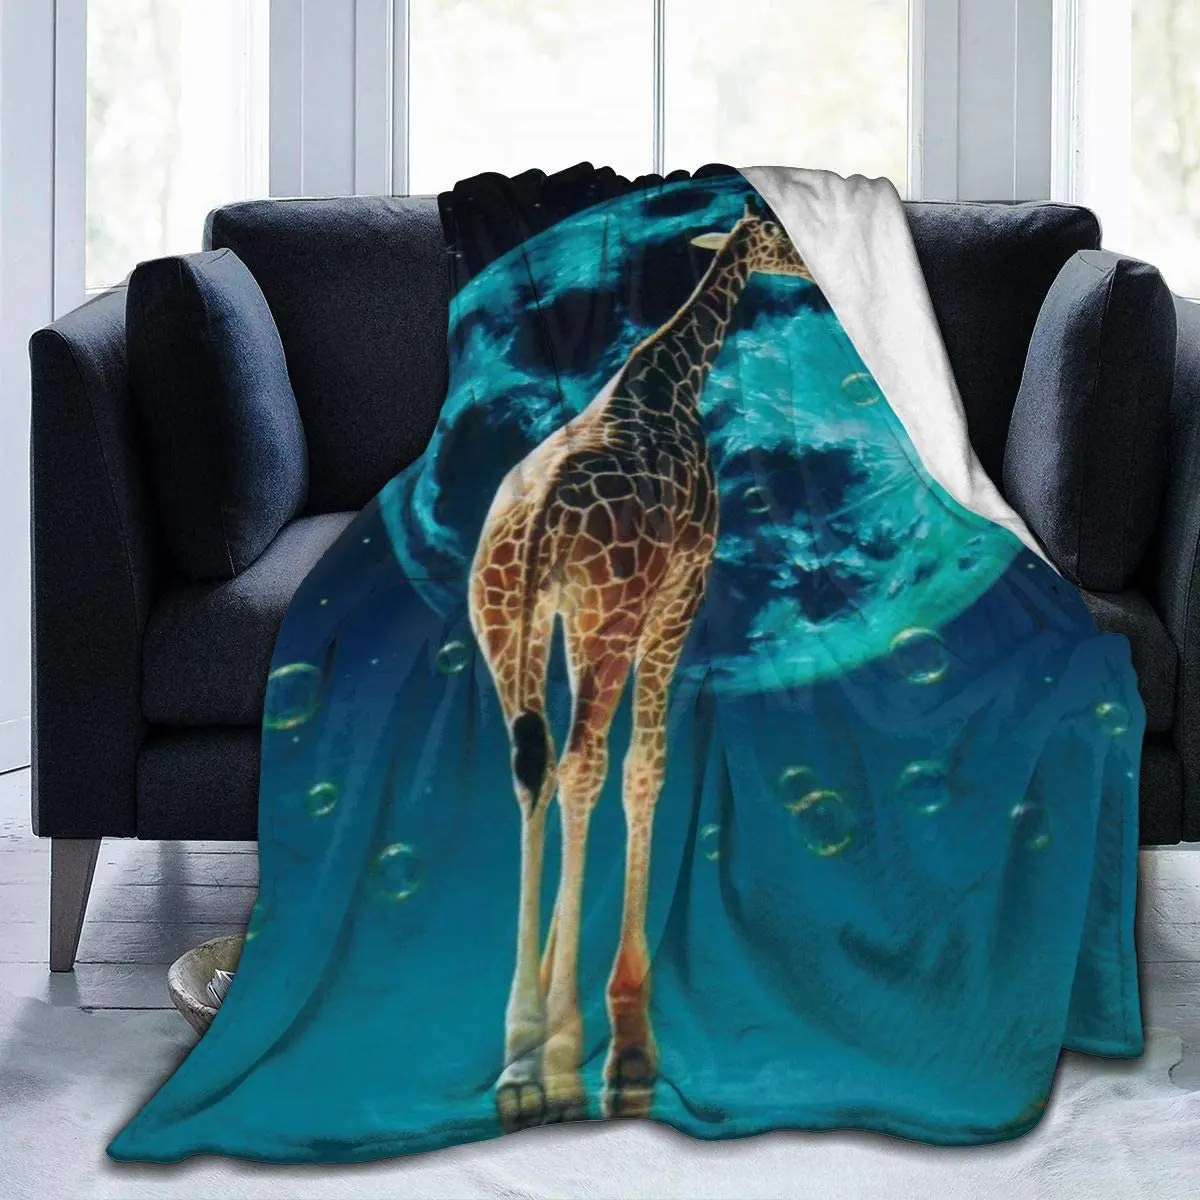 

Мягкое покрывало Delerain в виде жирафа 40x50 дюймов, легкий фланелевый флисовый плед для кровати, дивана, путешествий, кемпинга